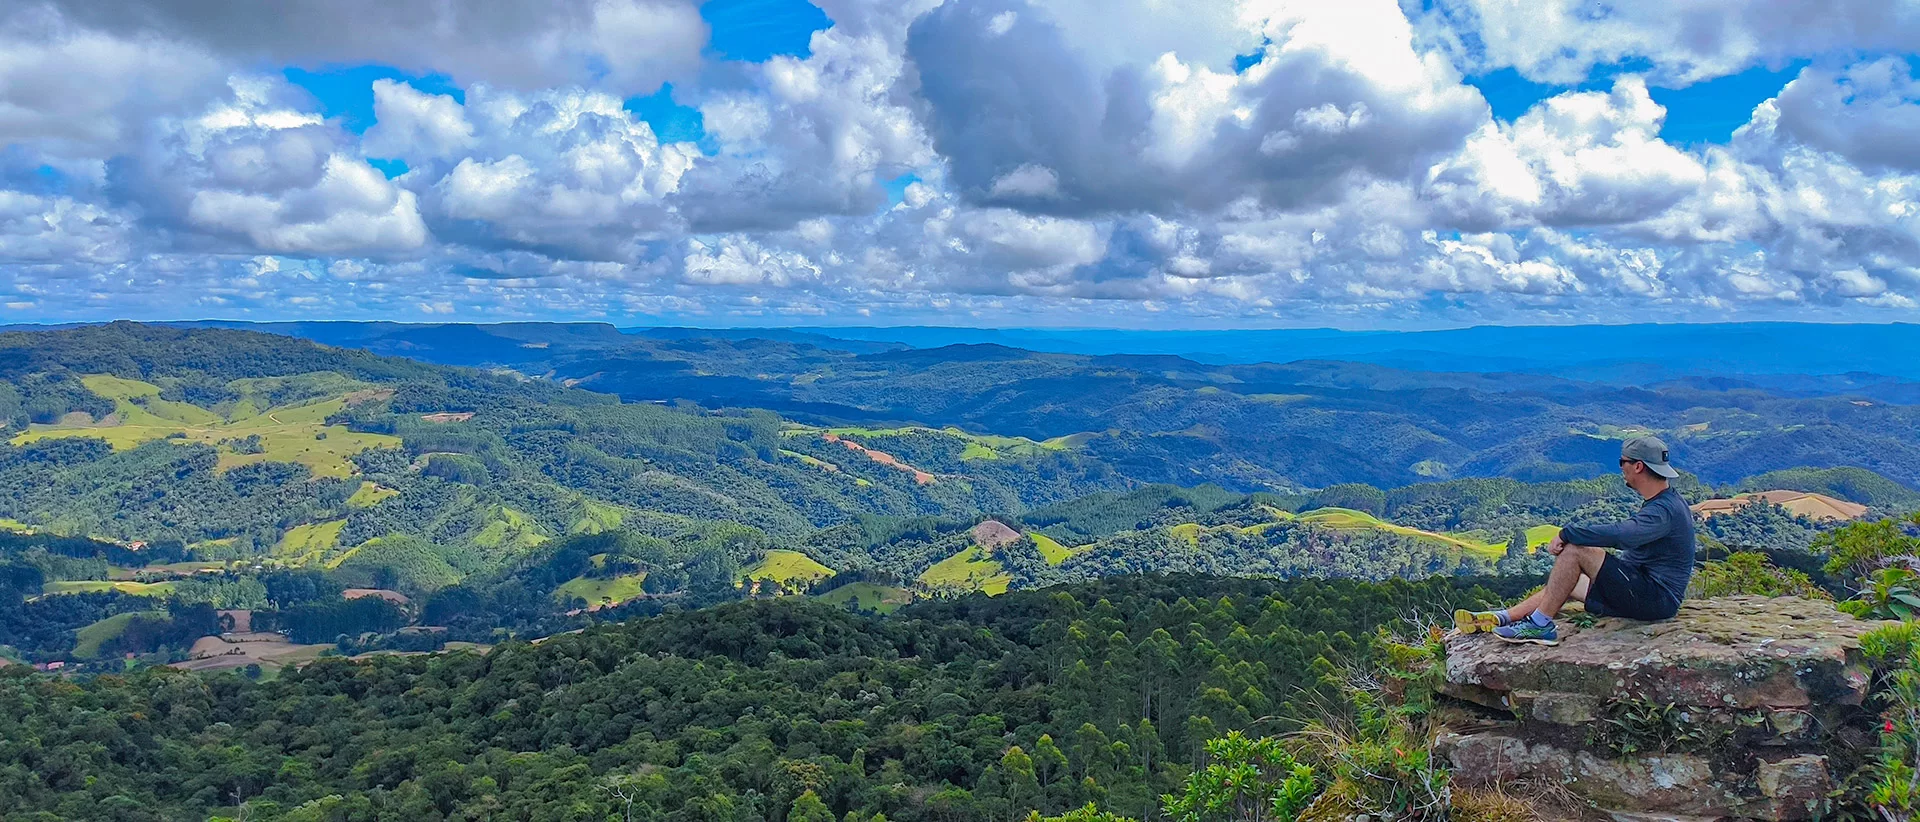 As melhores trilhas em Canhanduba, Santa Catarina (Brasil)